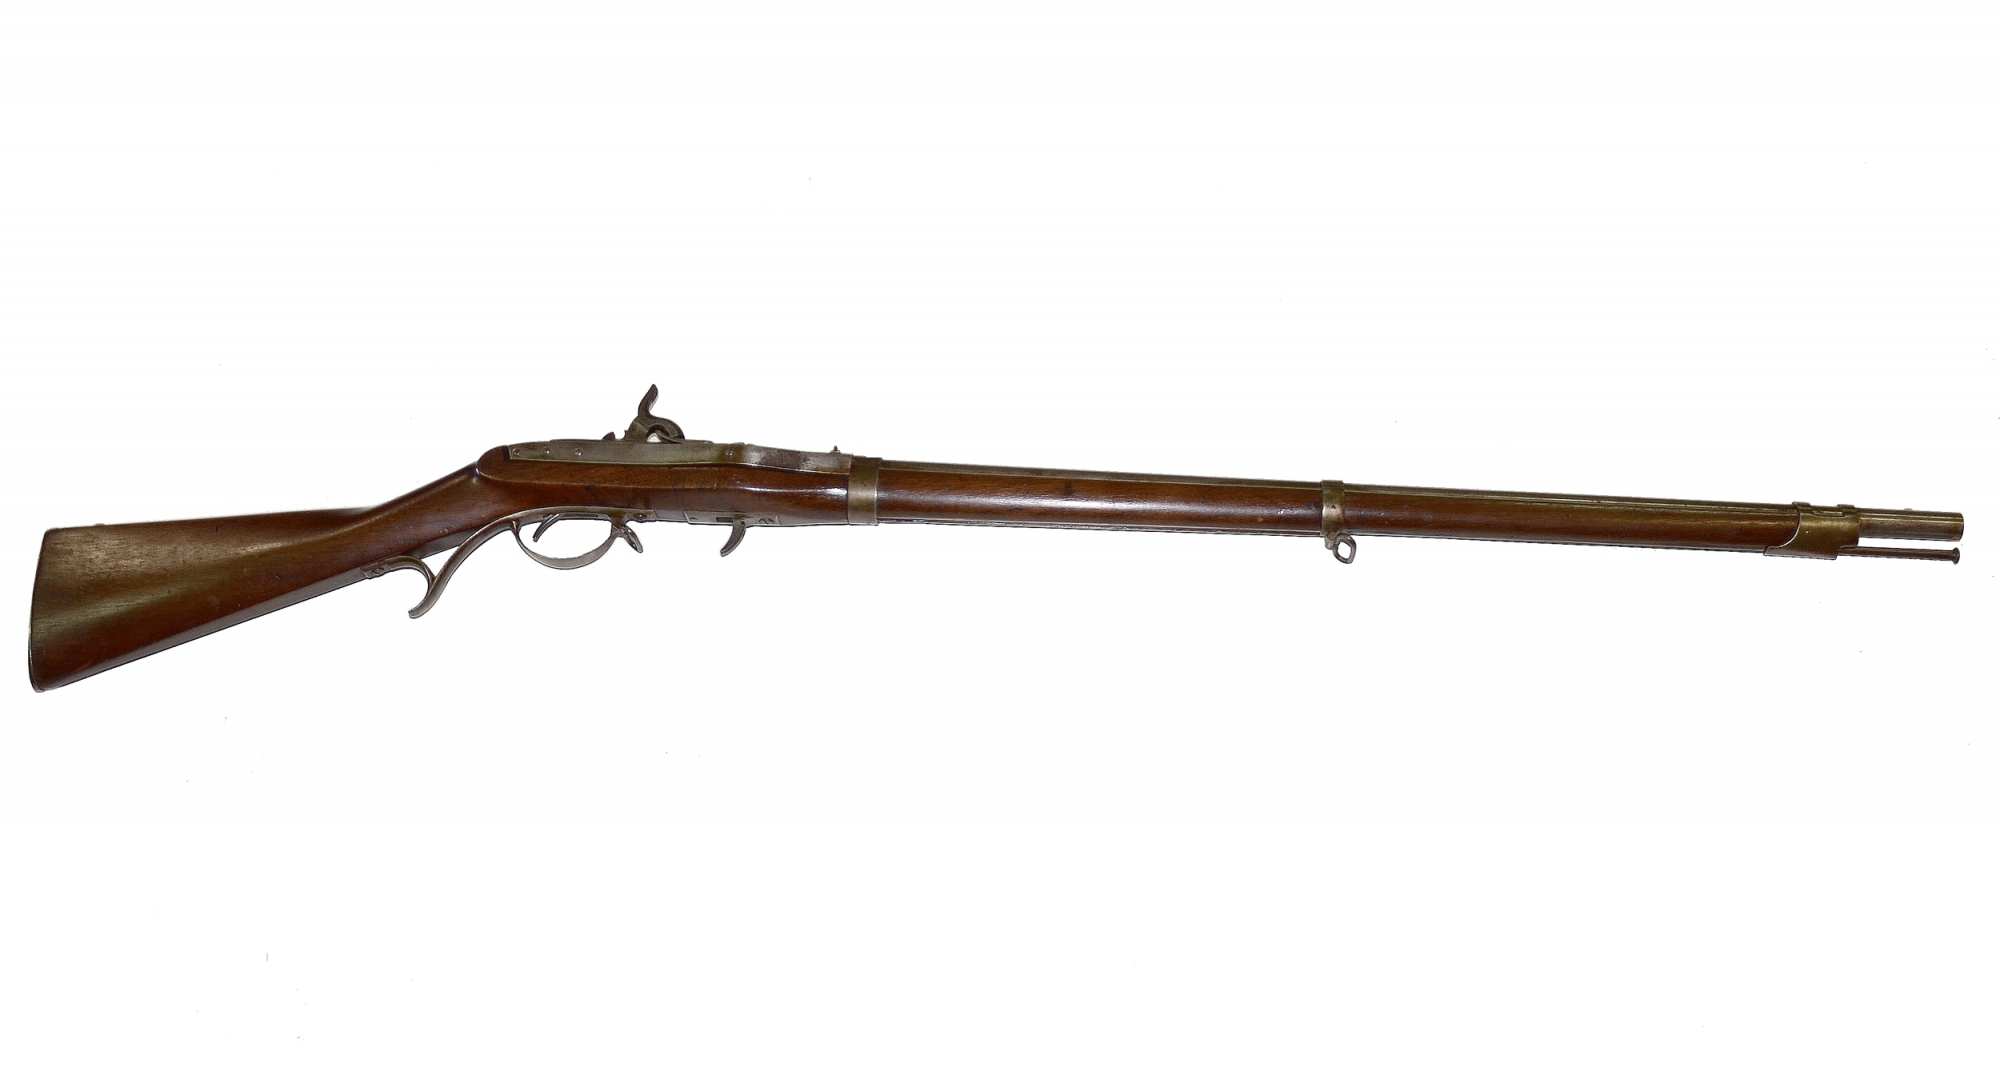 M1819 Hall rifle - Wikipedia